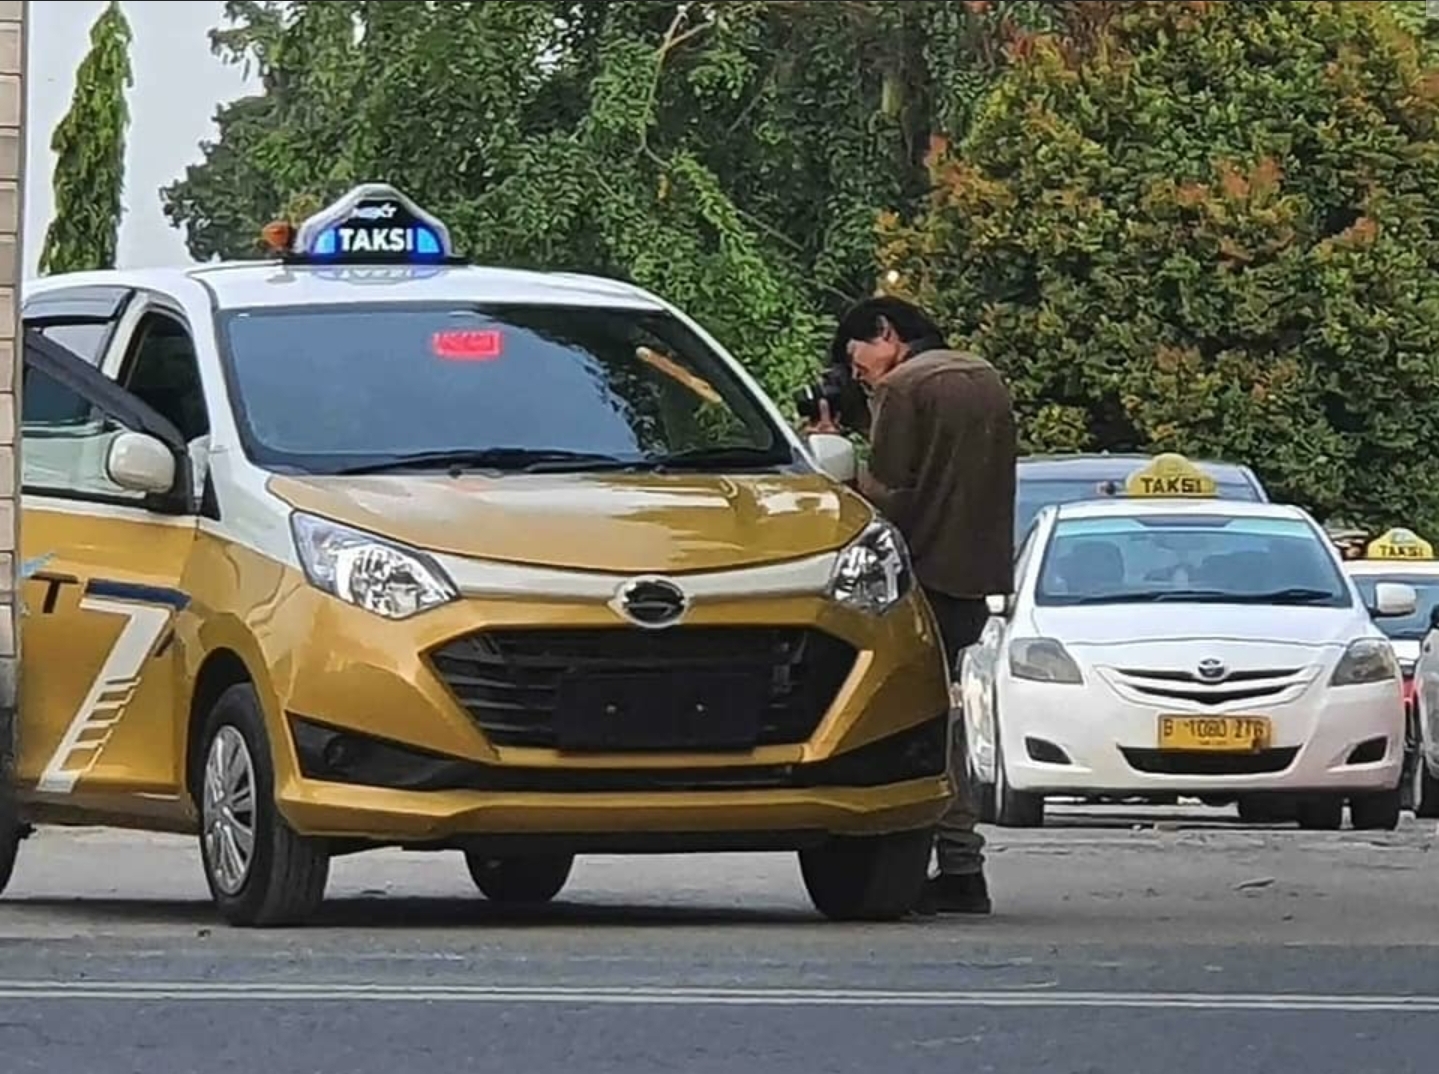 Spesifikasi Daihatsu Sigra Taksi Ekspress, Bukan Tipe Terendah Kok